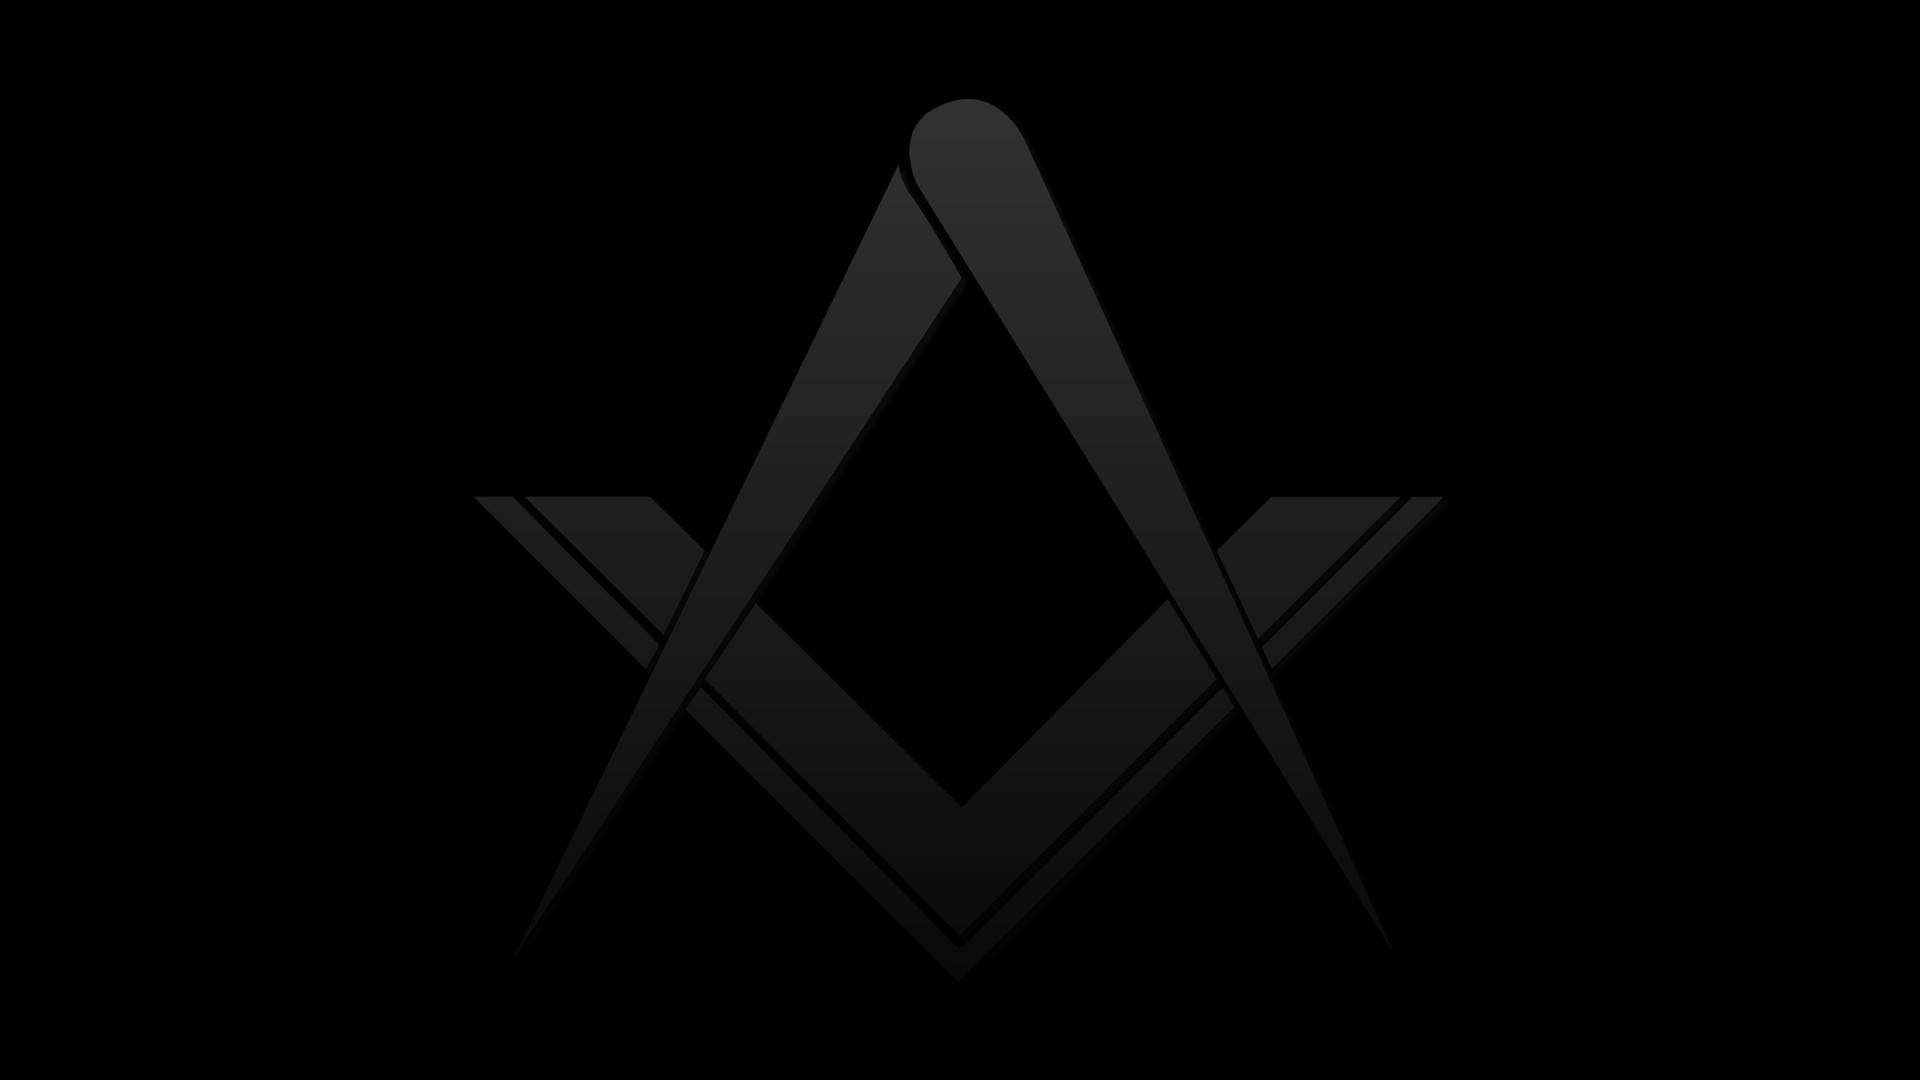 Minimalist Masonic Logo Background